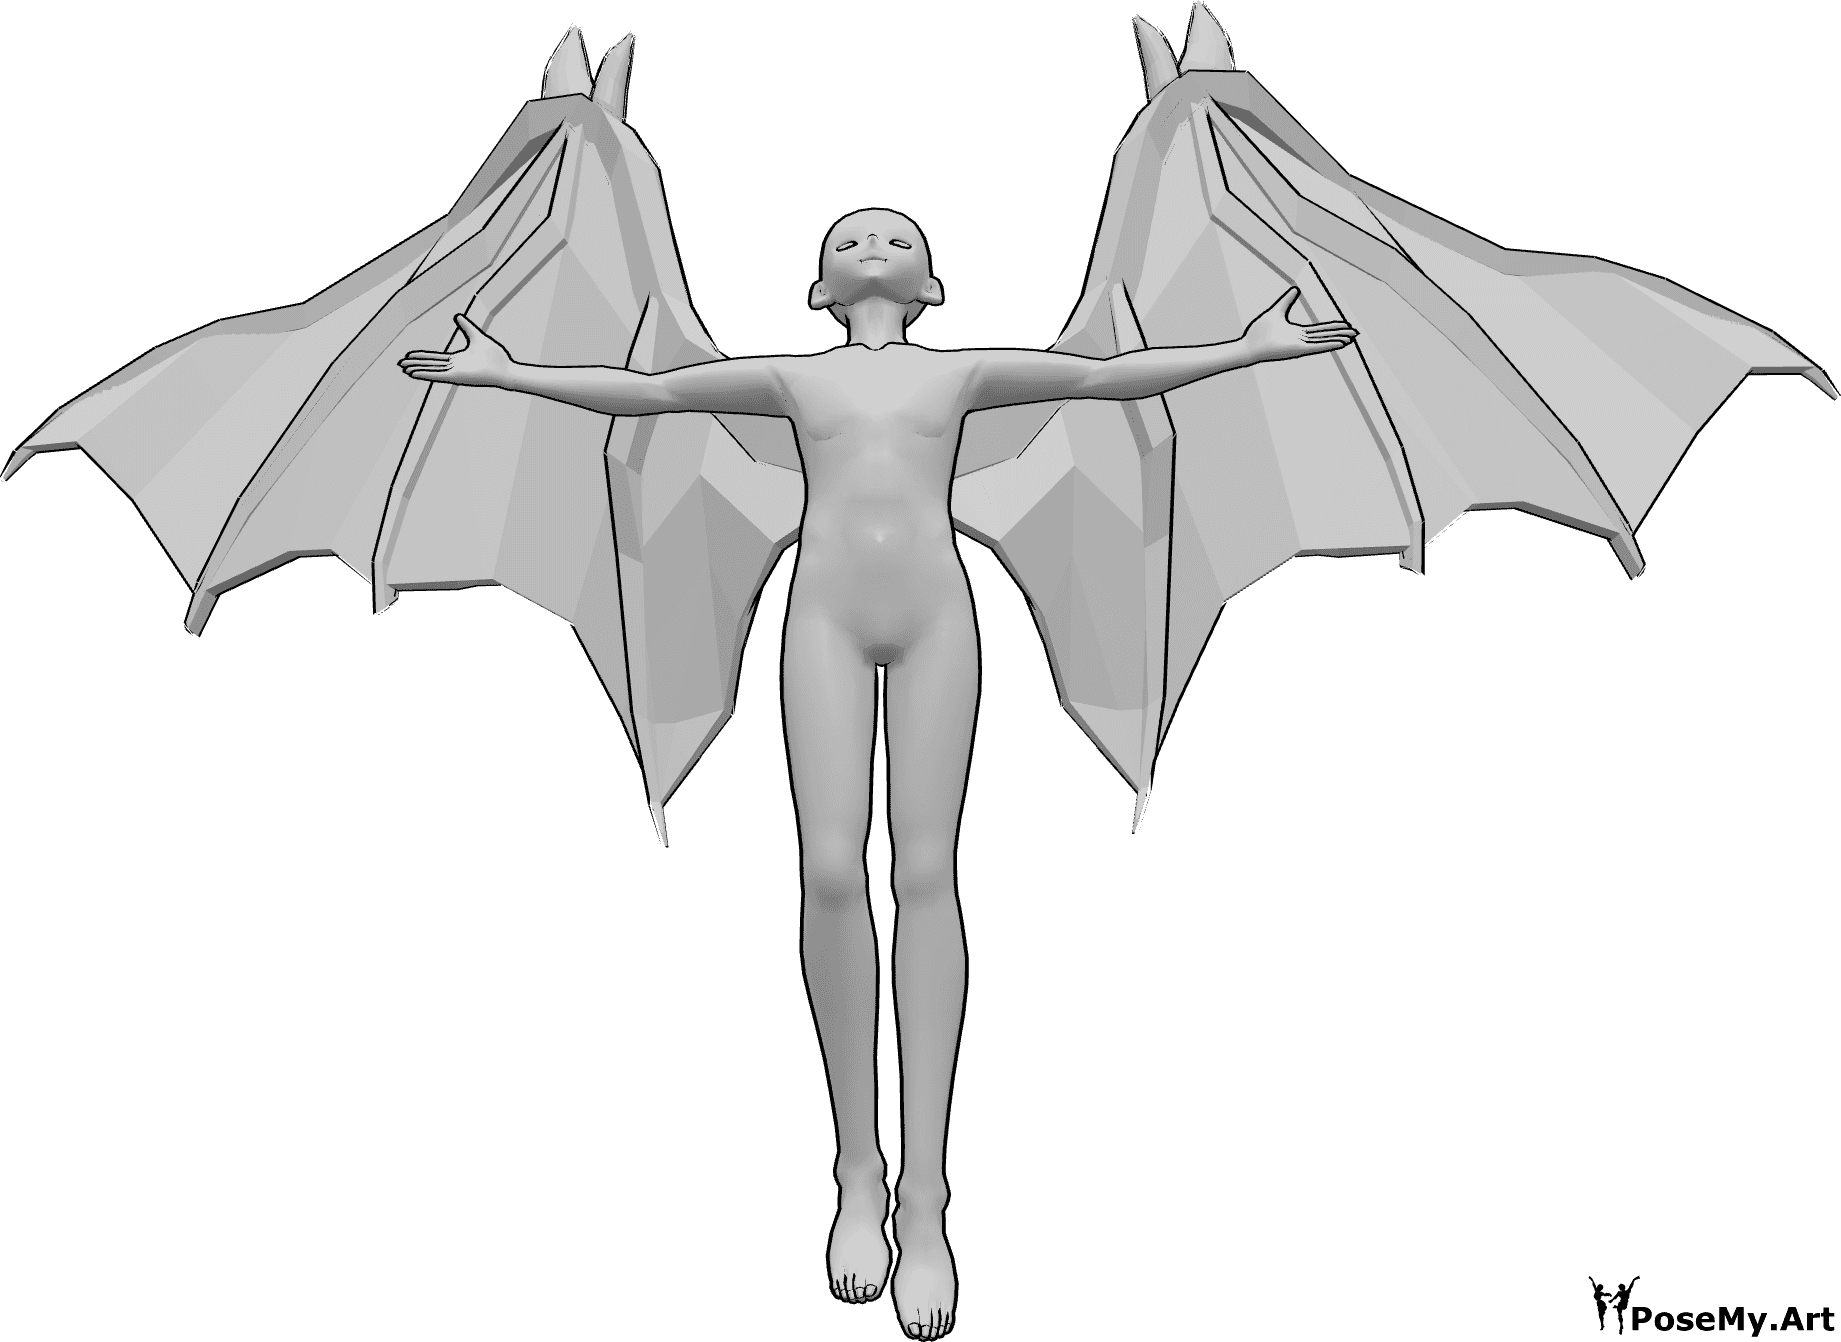 Référence des poses- Anime devil flying pose - Un homme d'animation avec des ailes de diable vole en regardant vers le haut et en levant les mains.